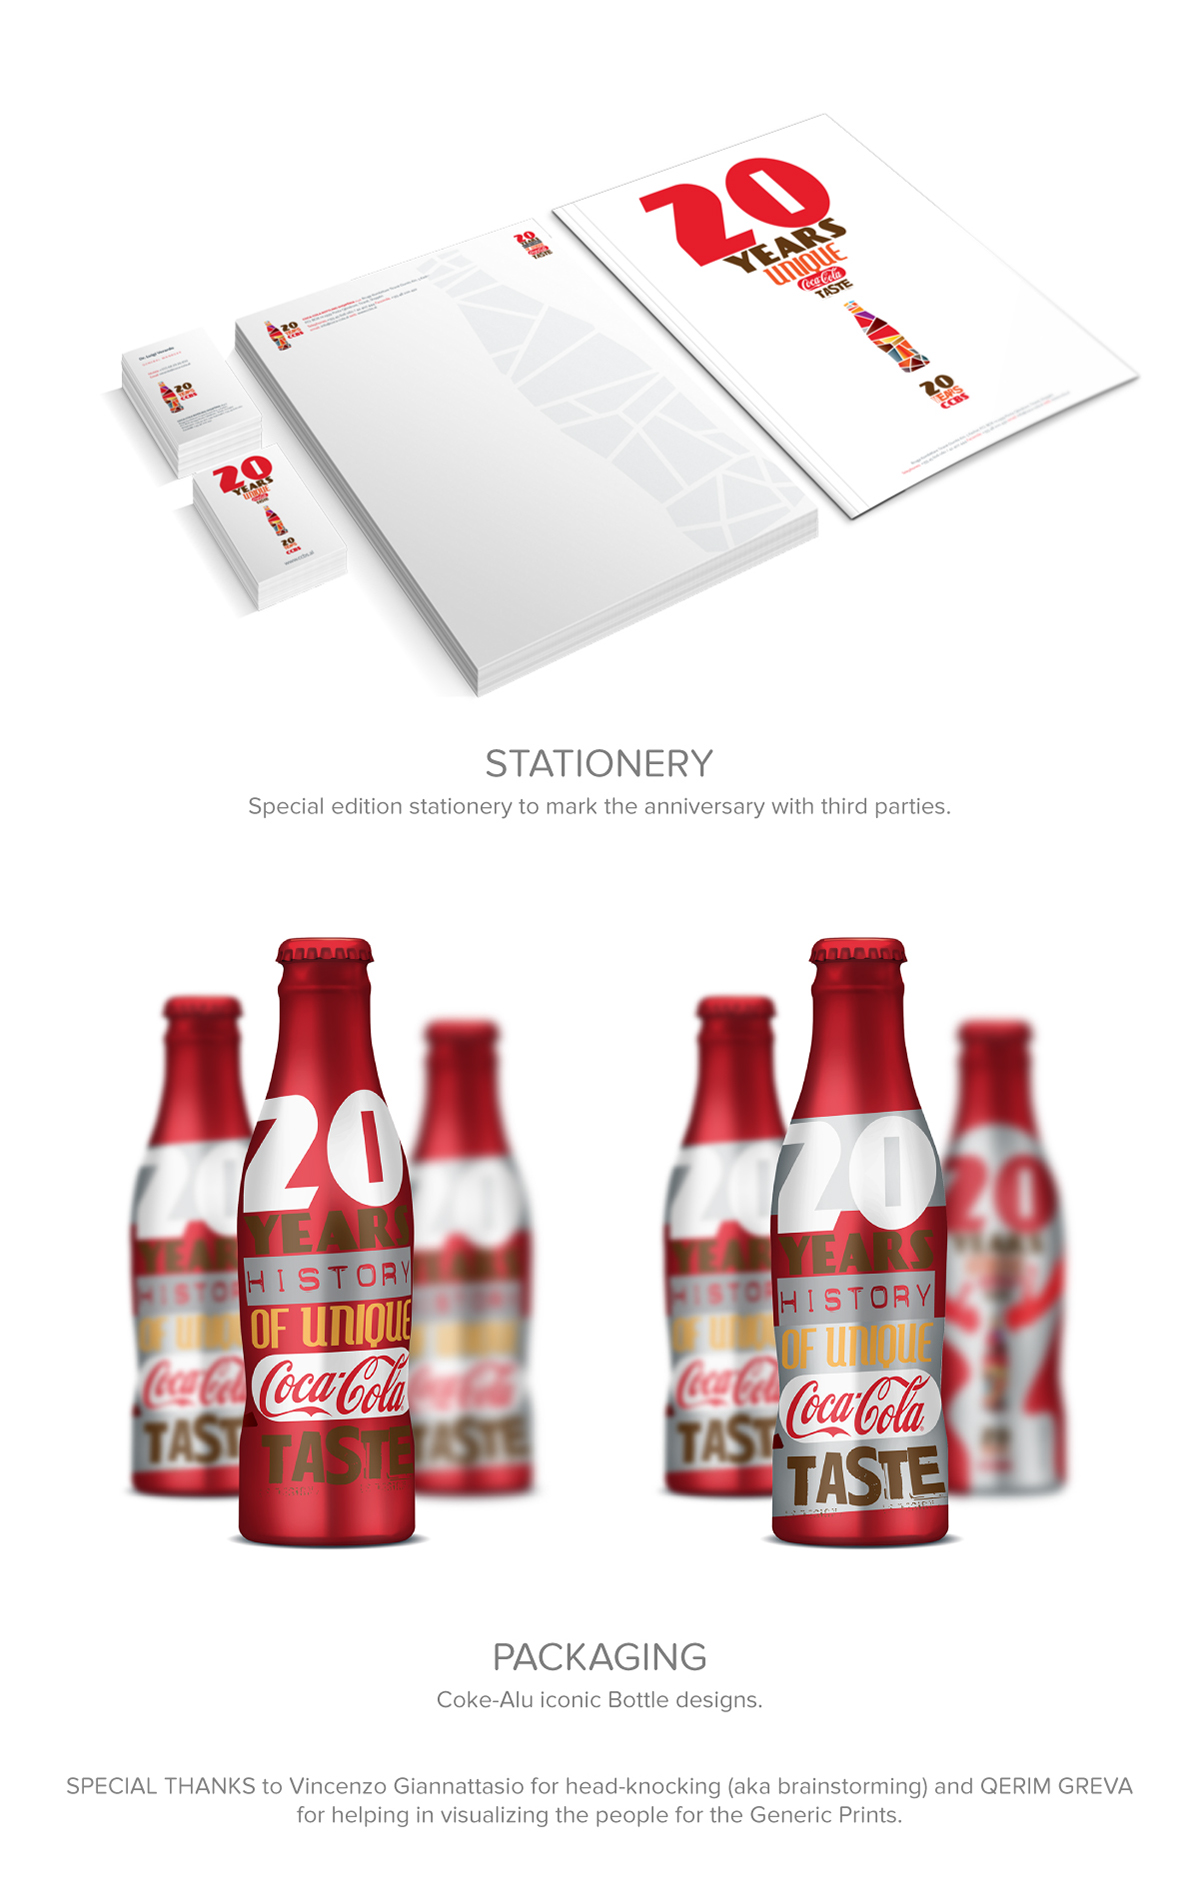 CCBS anniversary concept creative Albania Coca-Cola